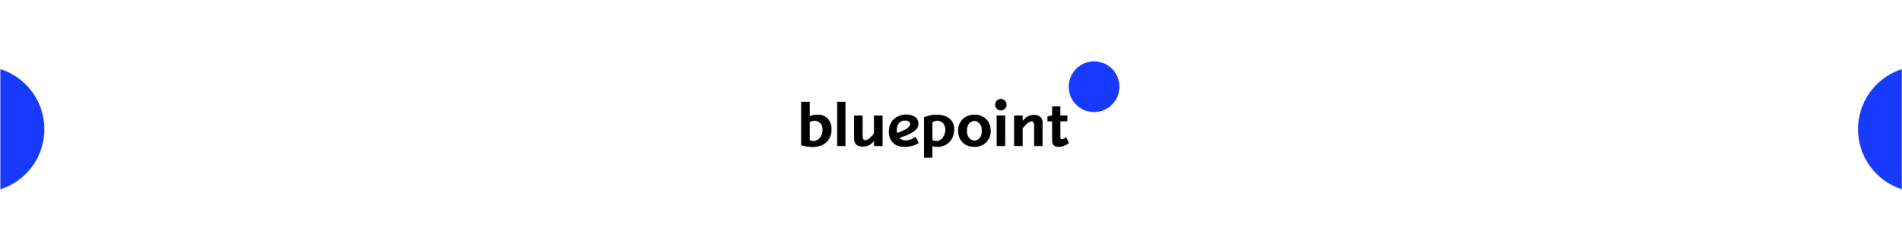 블루포인트 Bluepoint